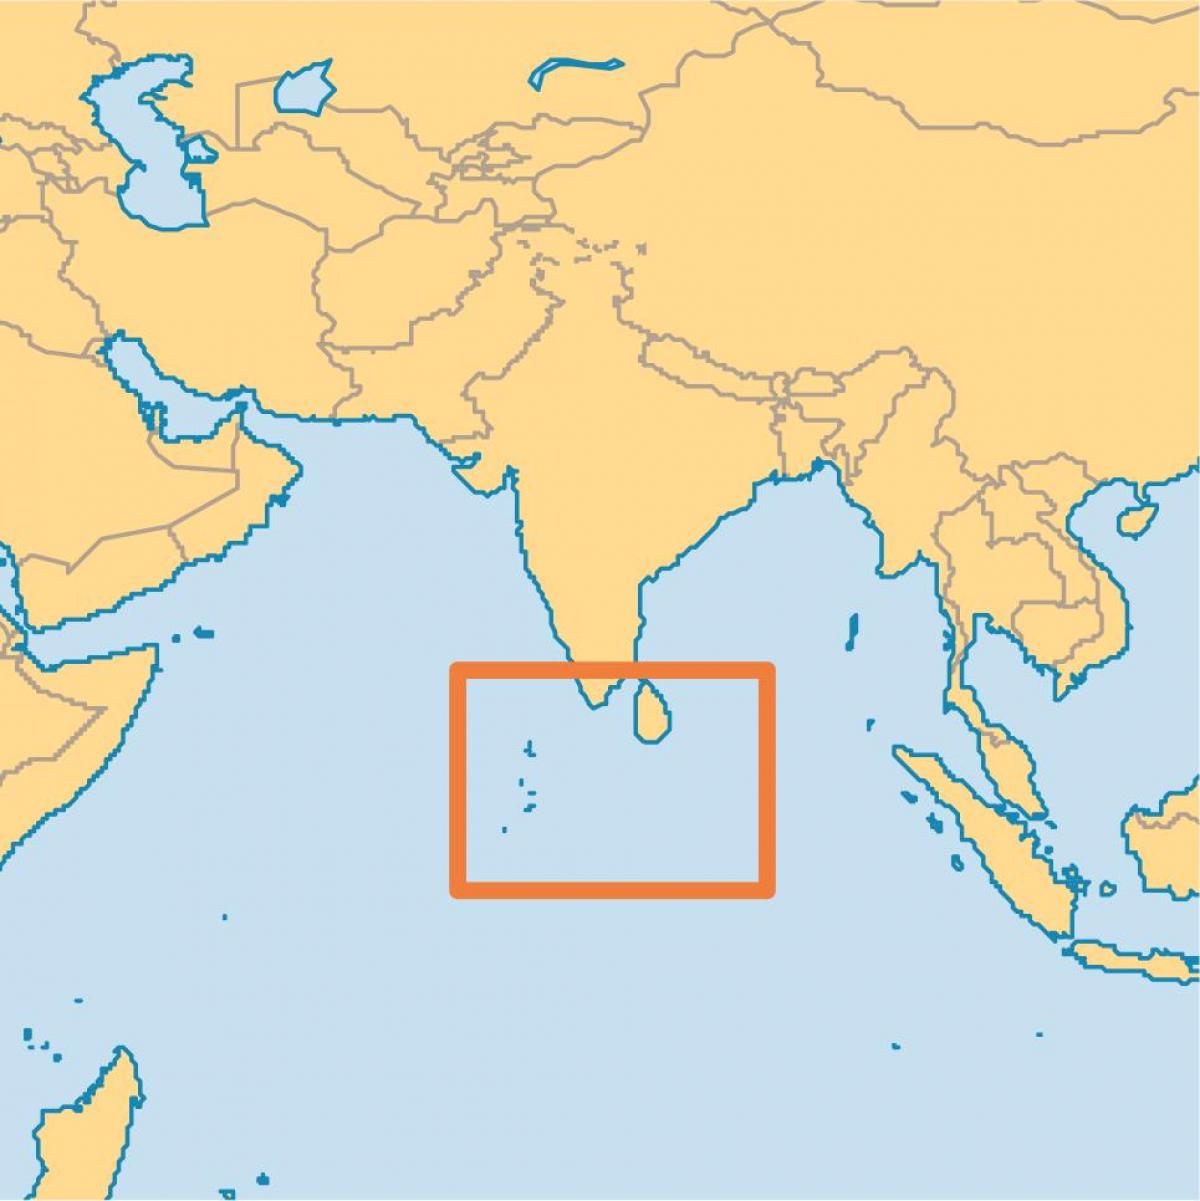 мальдив арал байршил дээр дэлхийн газрын зураг